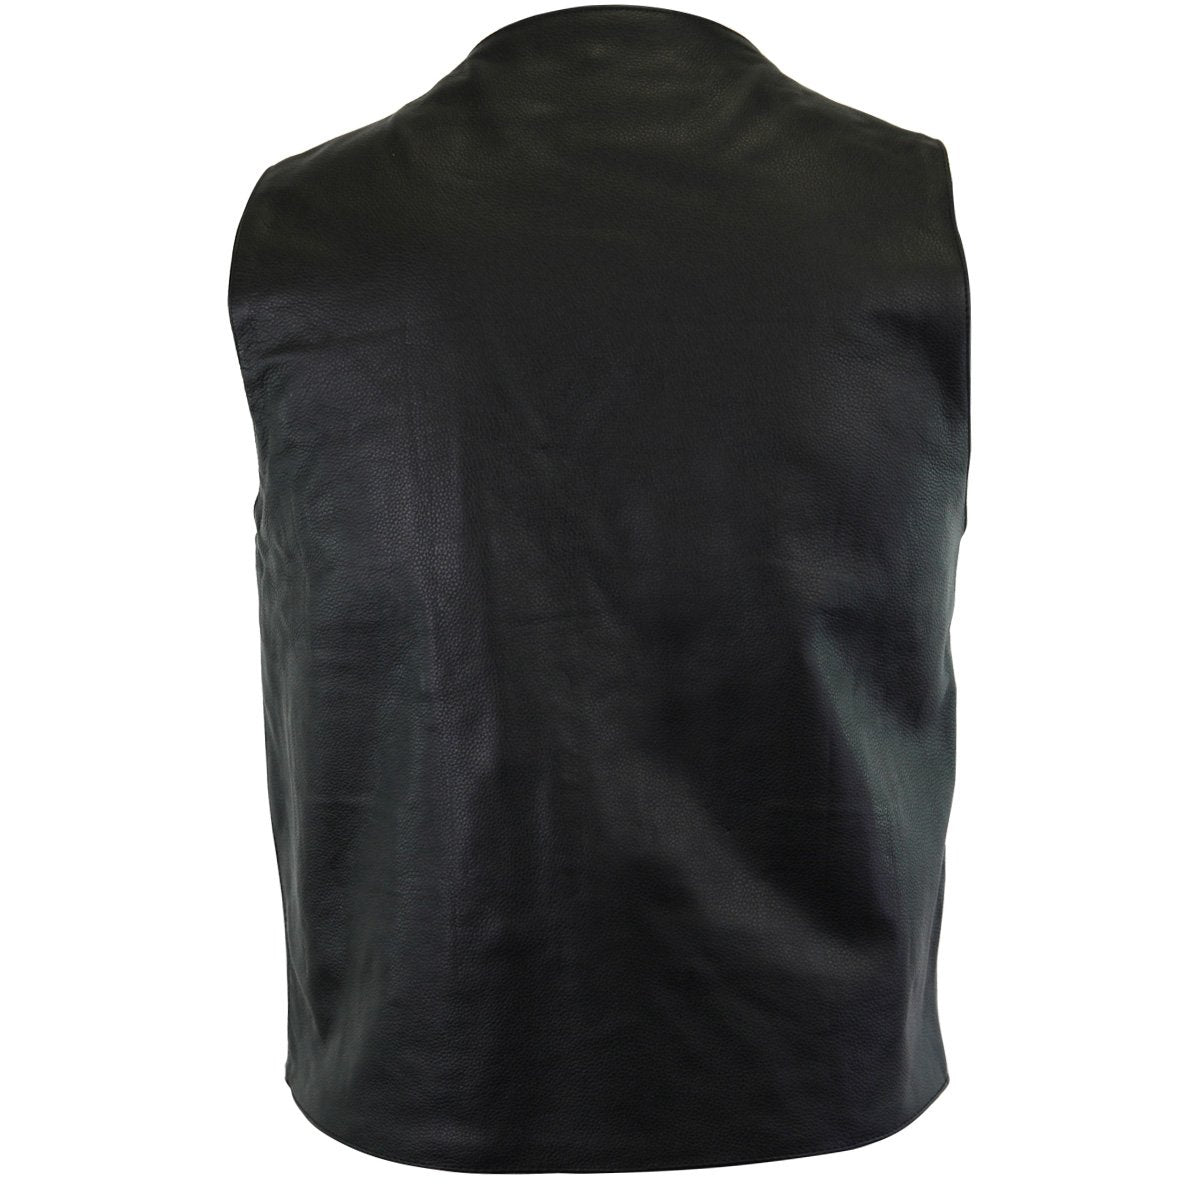 Vance Men's Concealment Leather Plain Side Vest w/ Two Gun Pockets